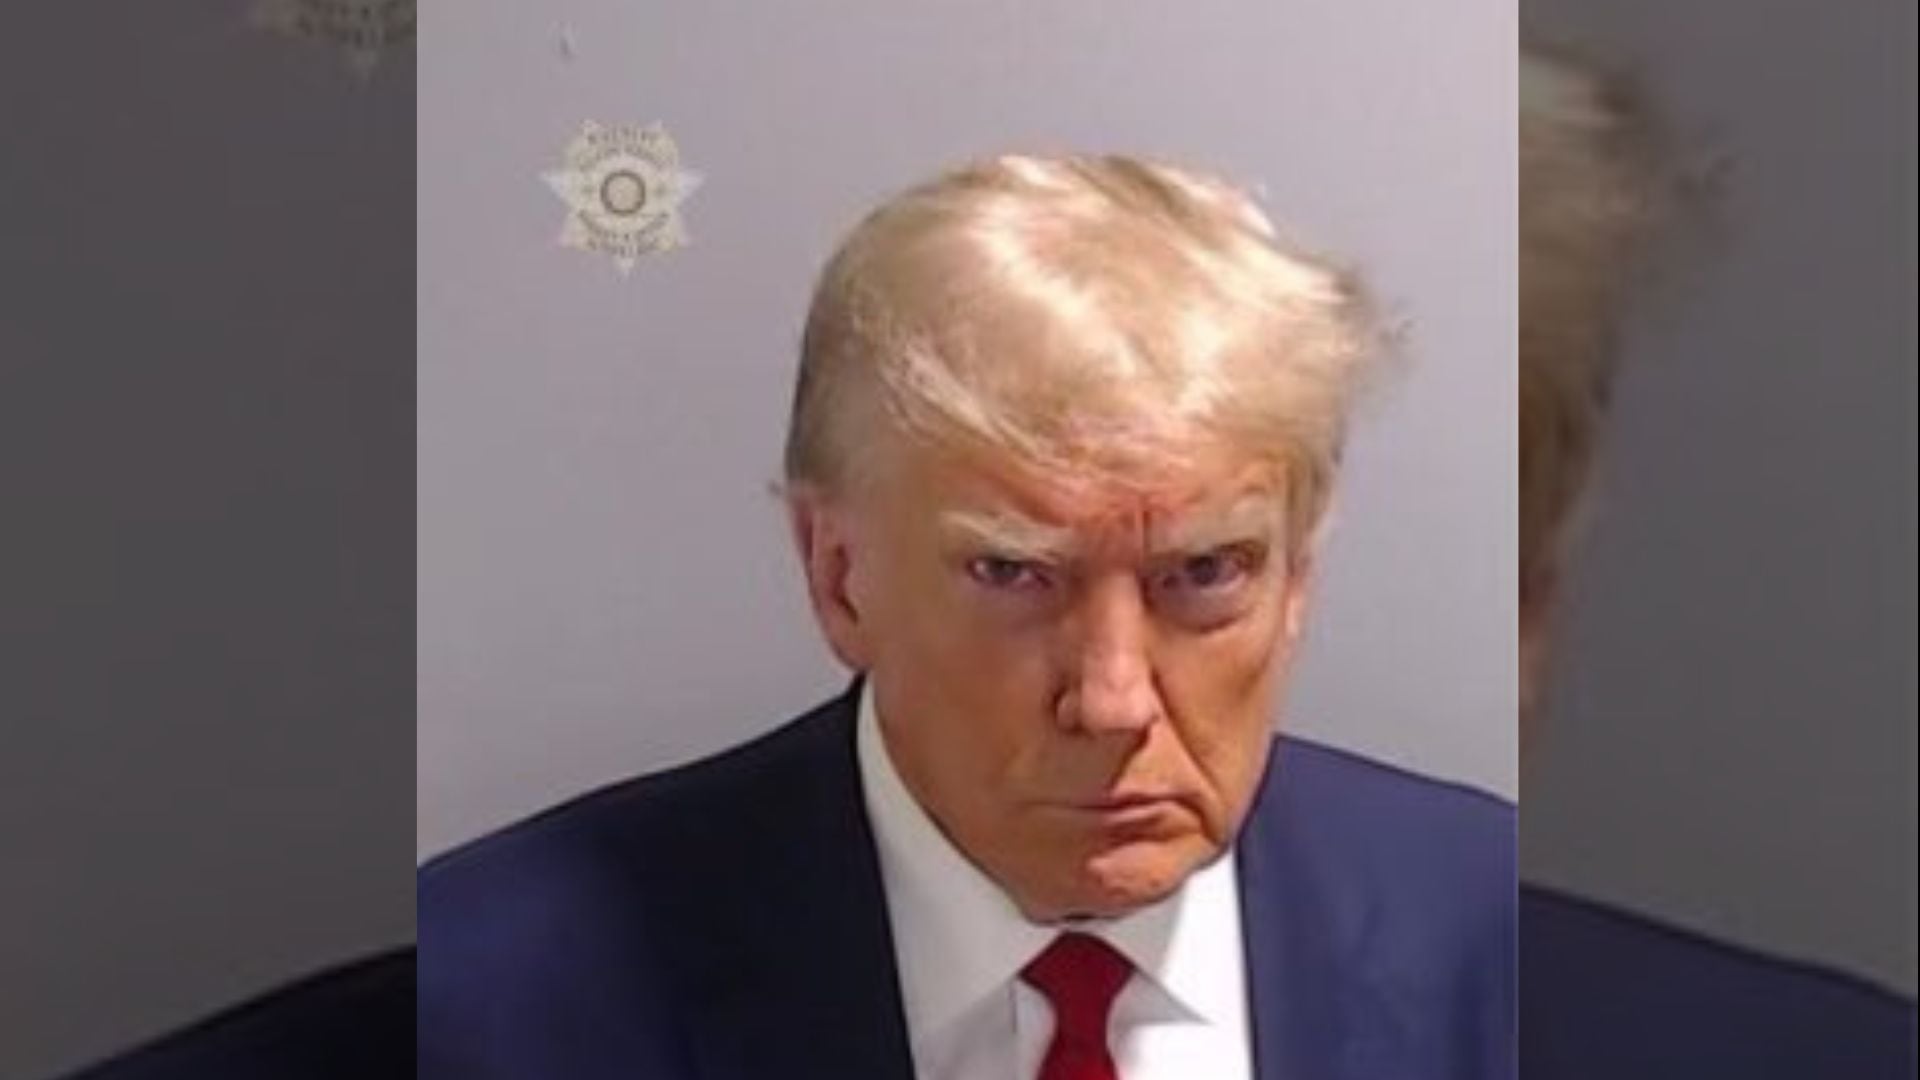 Circula en redes sociales la foto de Donald Trump al momento de ser fichado en la cárcel de Fulton.